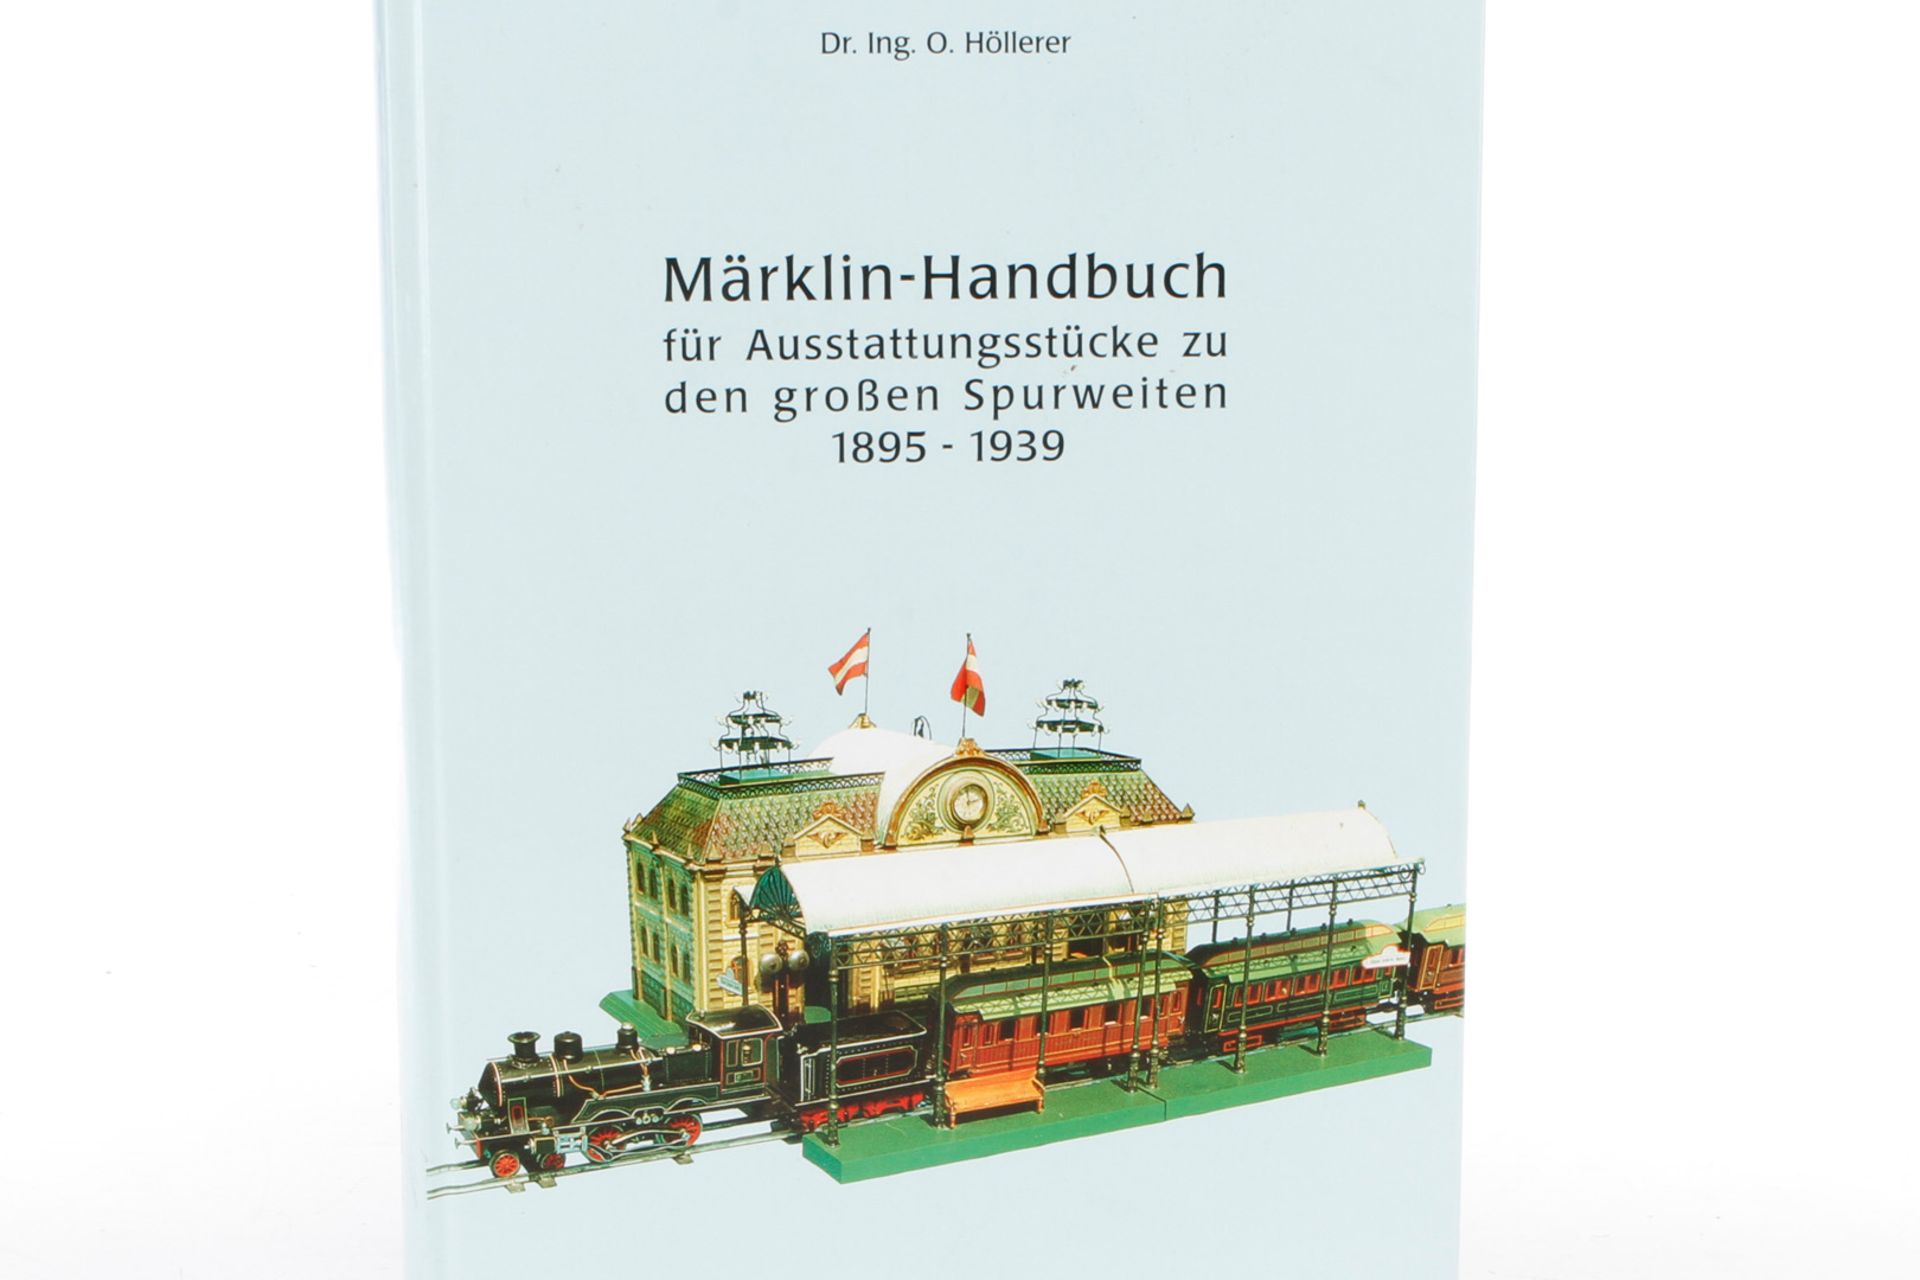 Höllerer-Buch ”Märklin-Handbuch”, Alterungsspuren